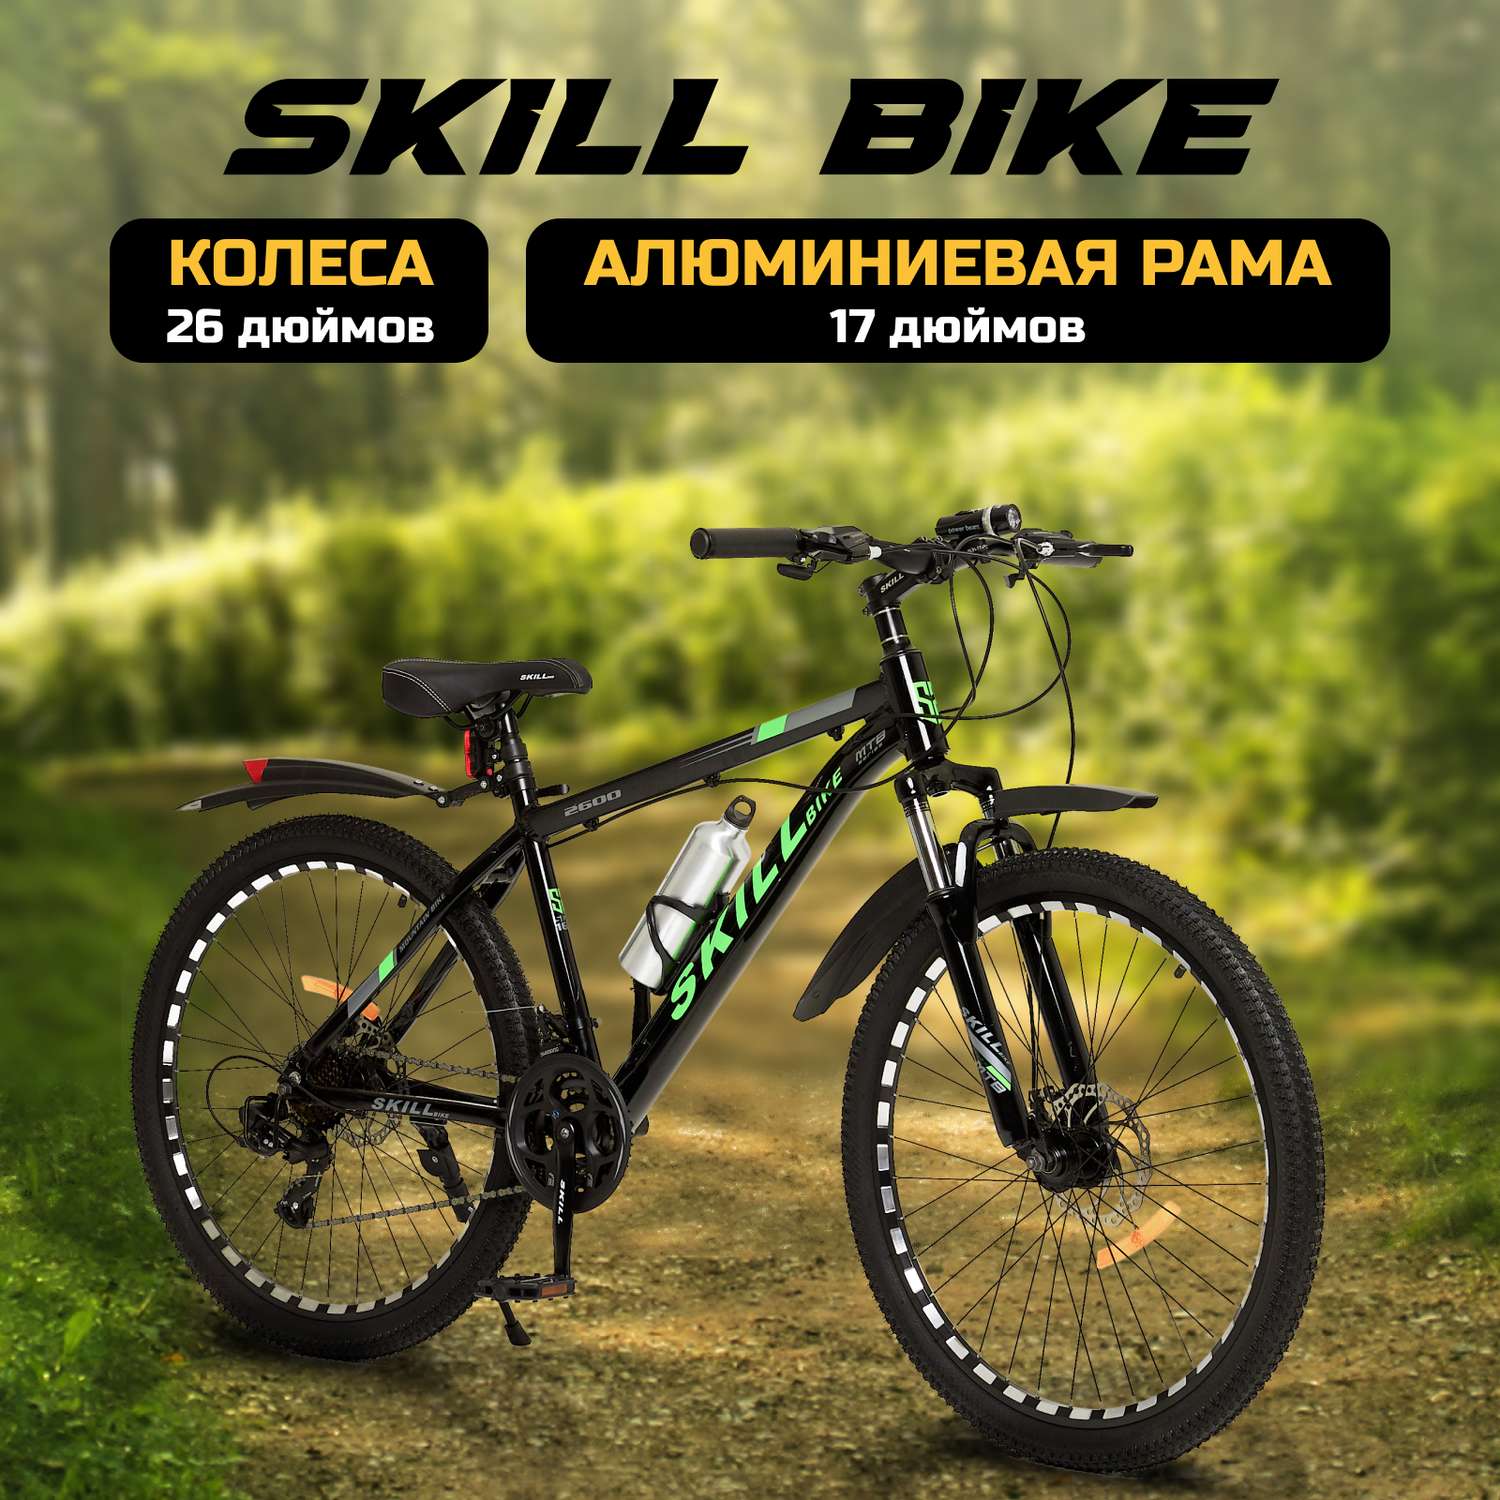 Велосипед Skill Bike blackGreen 3050 - фото 1